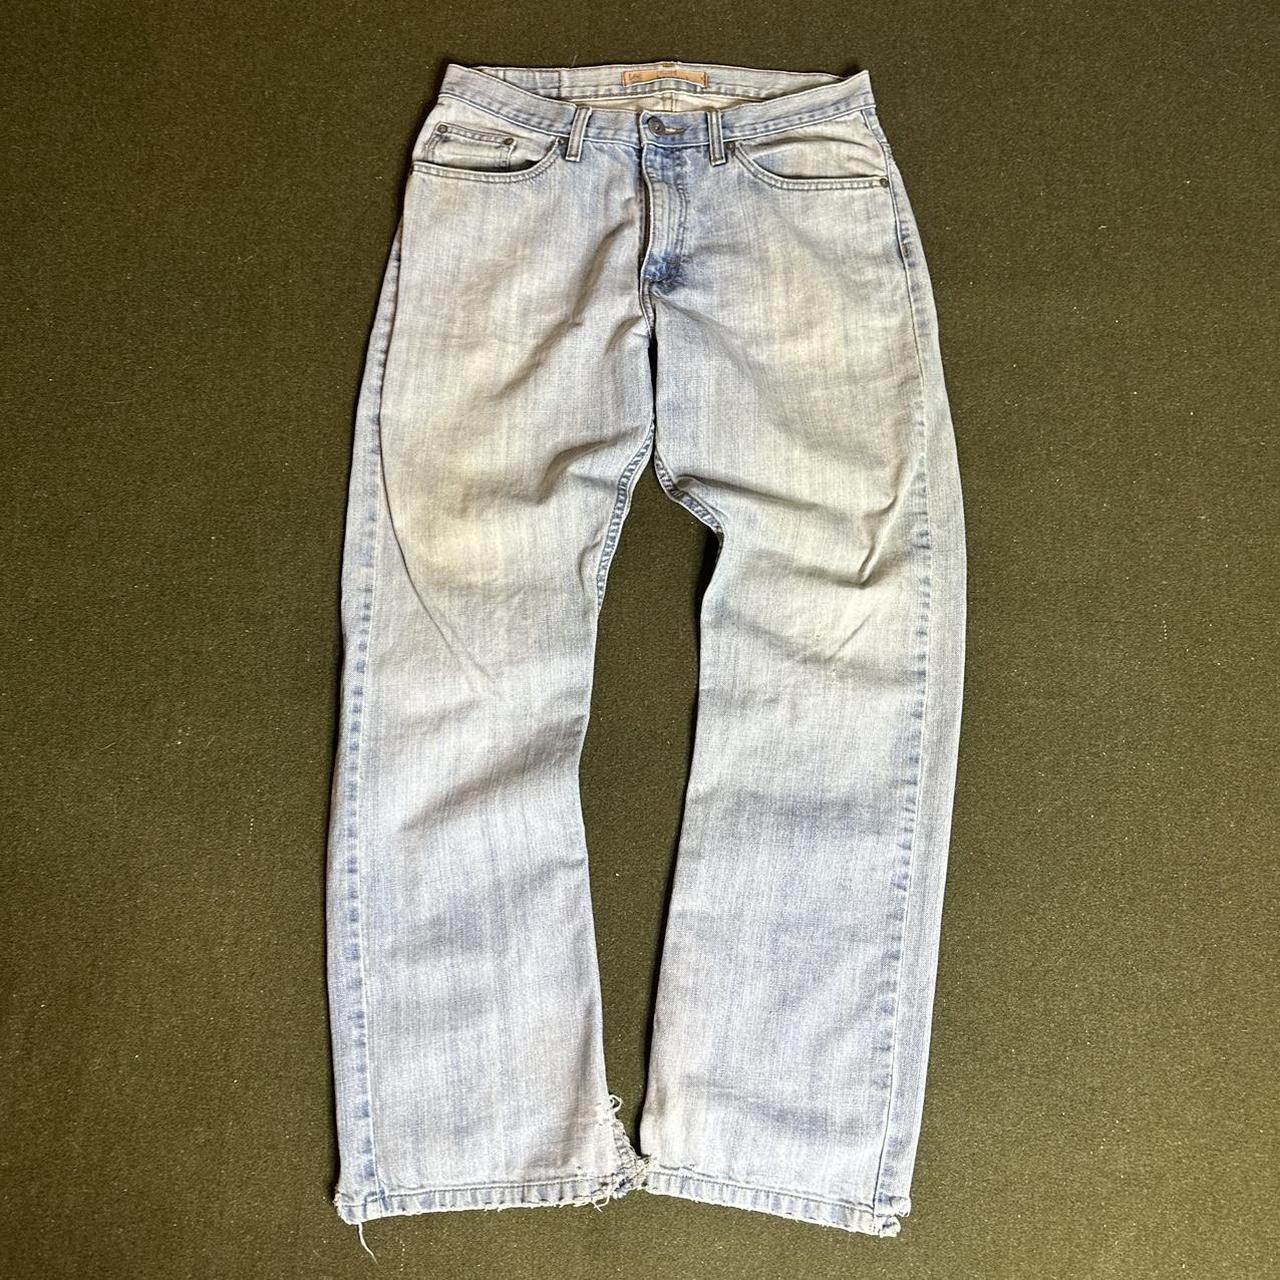 Vintage Lees jeans measurements are 32x32. Tag is... - Depop